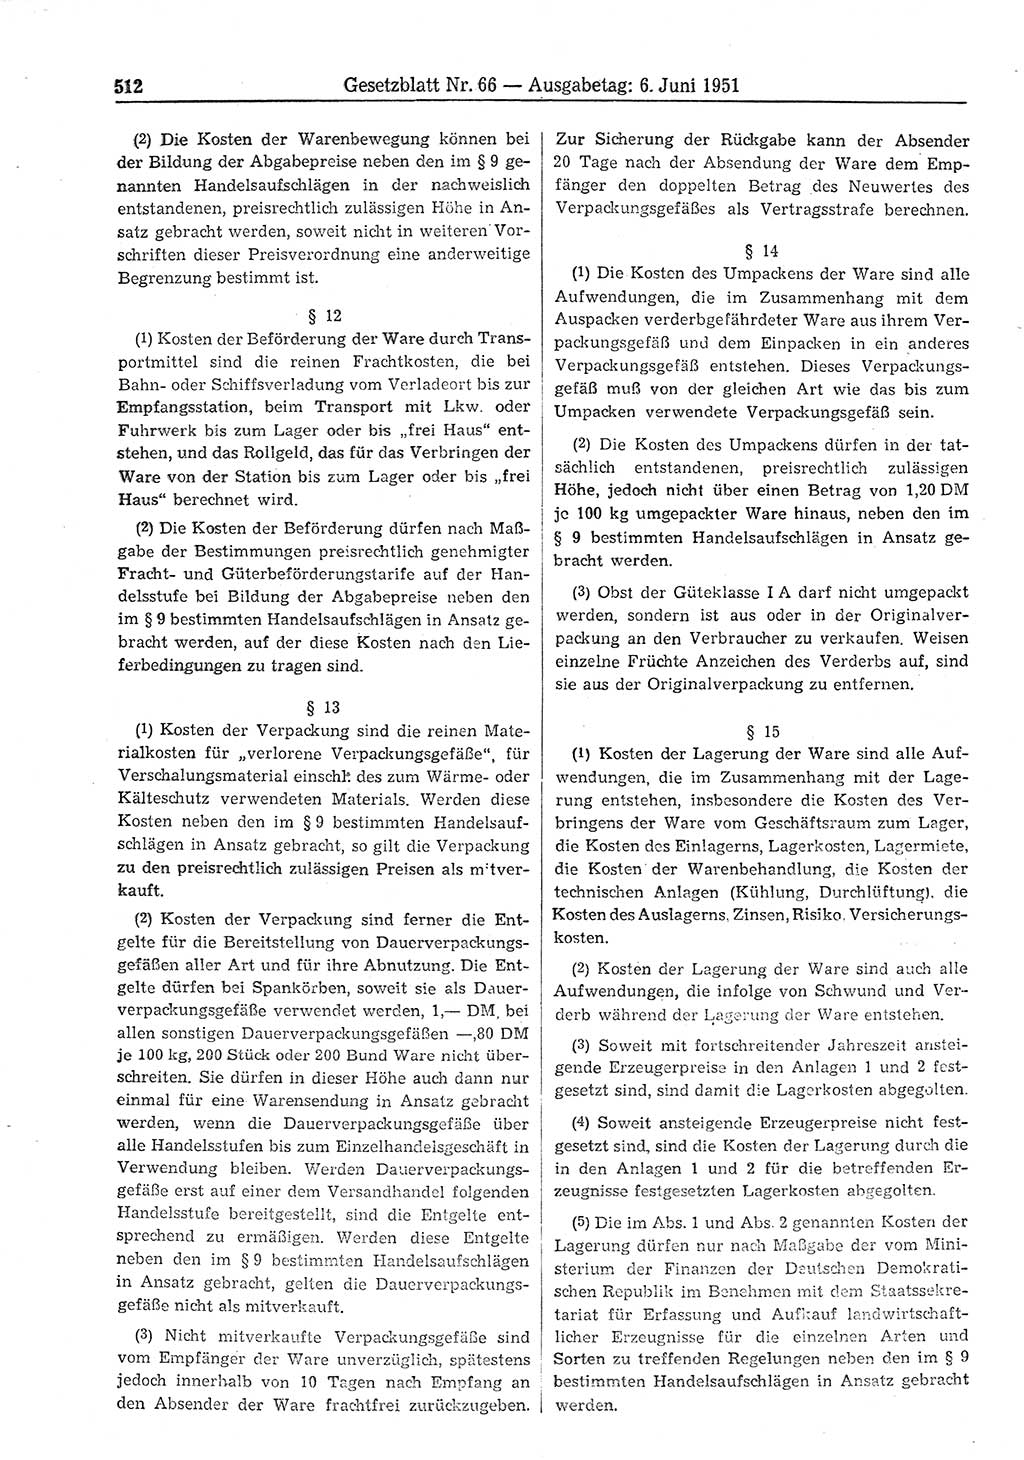 Gesetzblatt (GBl.) der Deutschen Demokratischen Republik (DDR) 1951, Seite 512 (GBl. DDR 1951, S. 512)